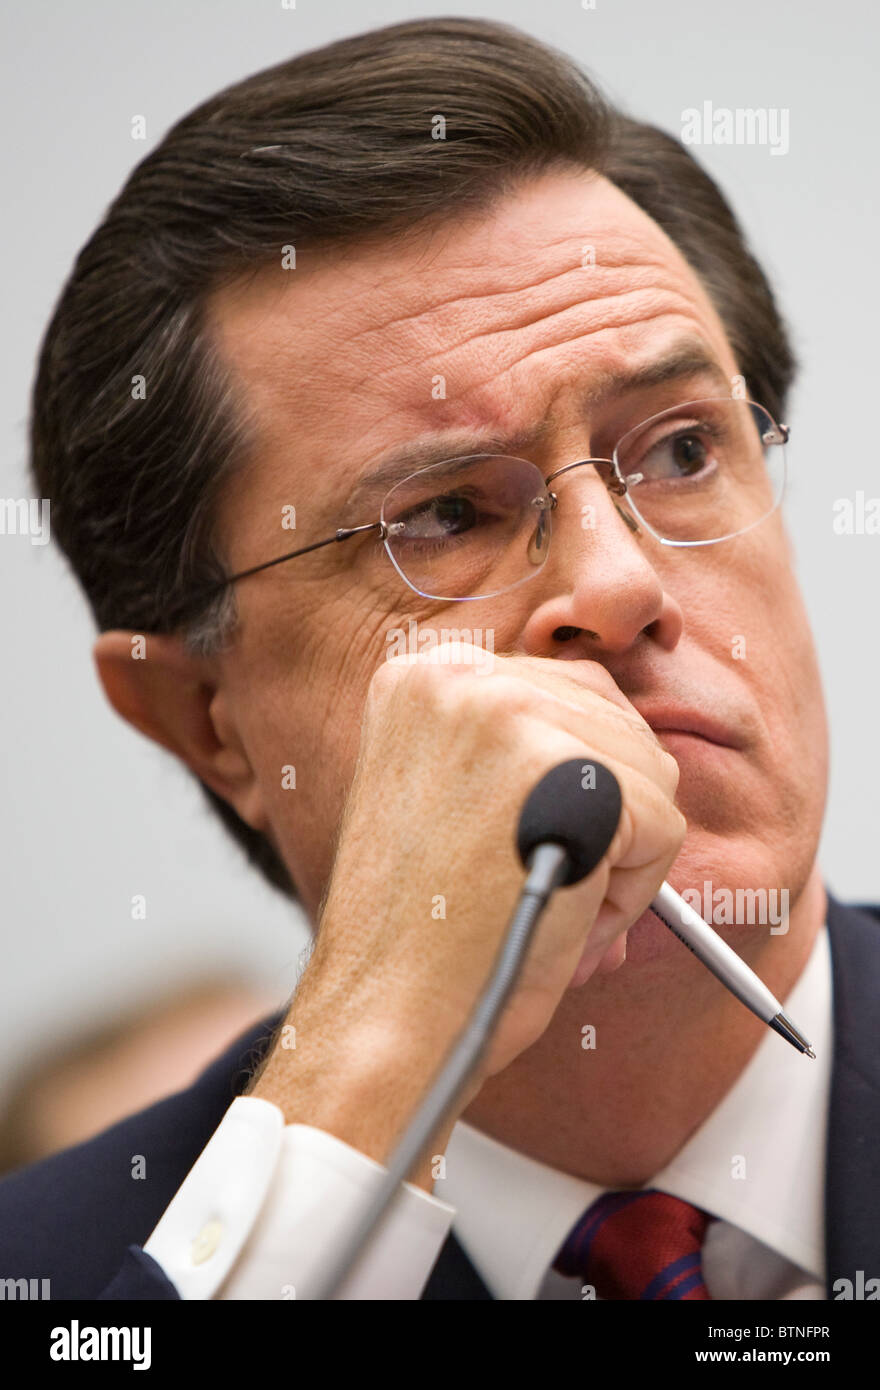 El actor y comediante Stephen Colbert testifica ante el Congreso. Foto de stock